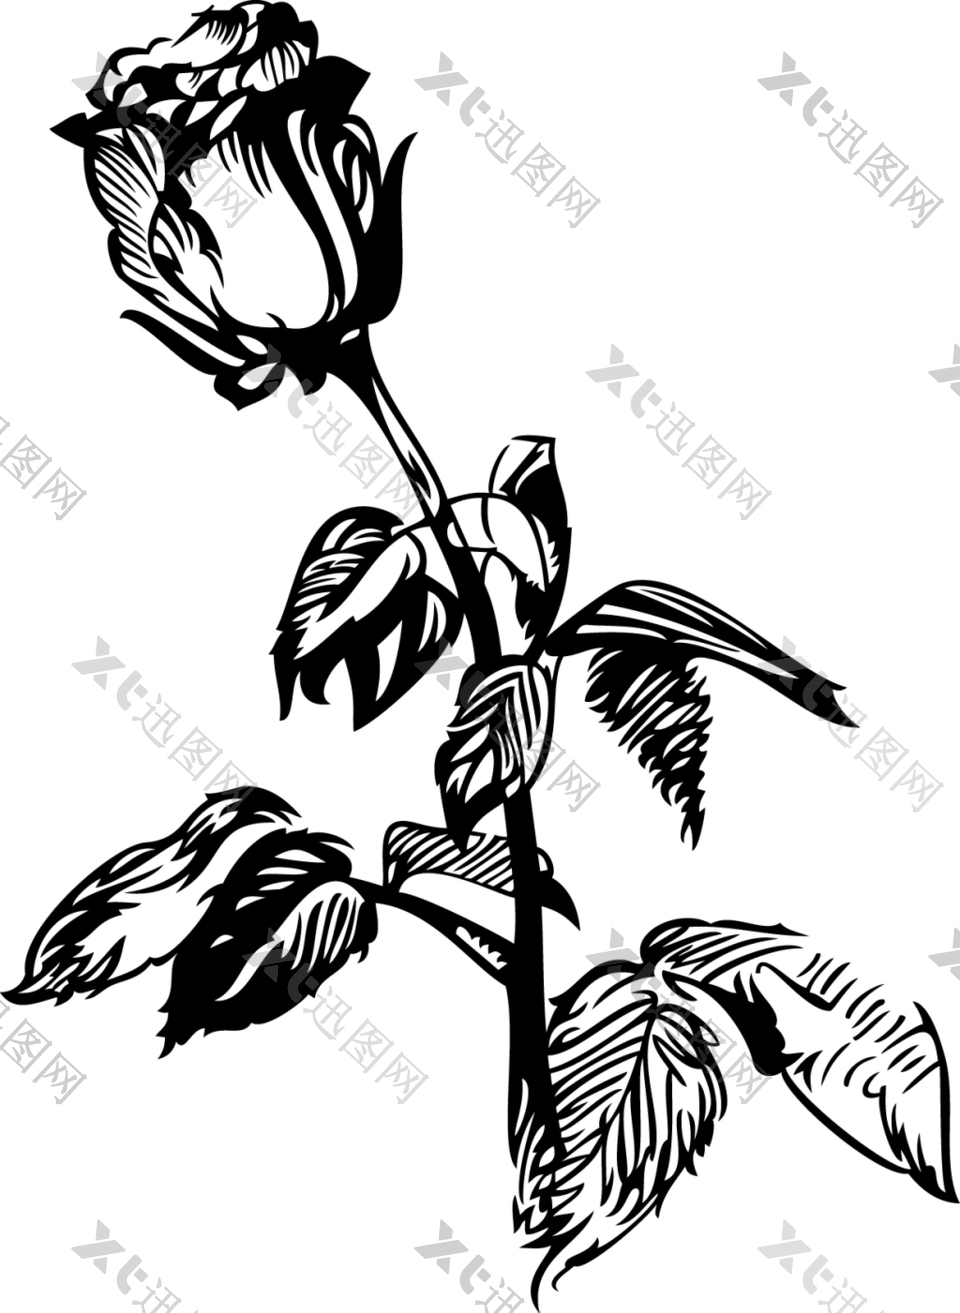 黑白手绘玫瑰花图案插画